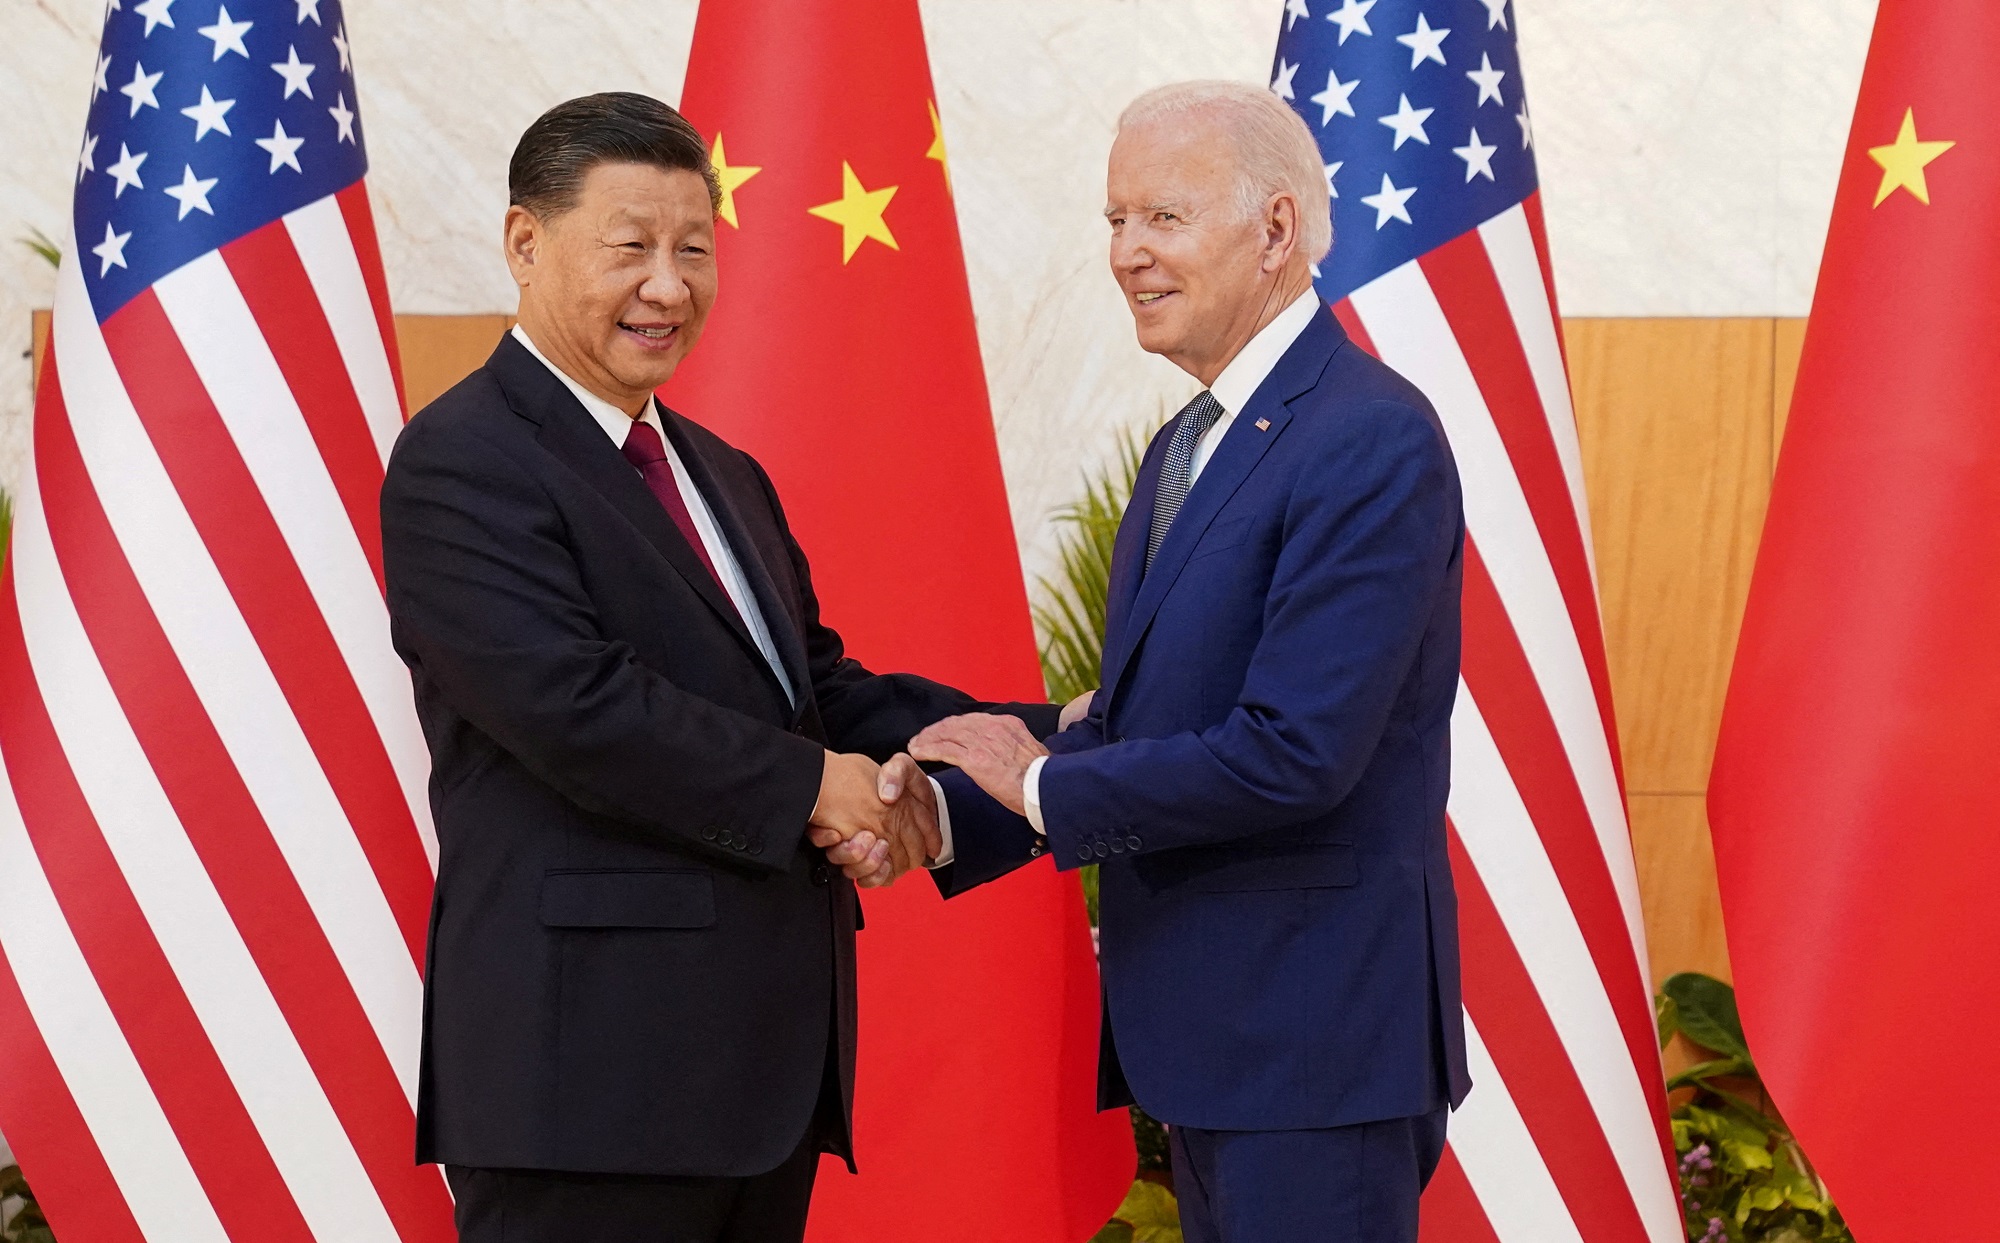 El presidente de los Estados Unidos, Joe Biden, le da la mano al presidente chino, Xi Jinping, en el marco del encuentro del G20 en Bali, Indonesia, a 14 de noviembre de 2022. -REUTERS / Kevin Lamarque